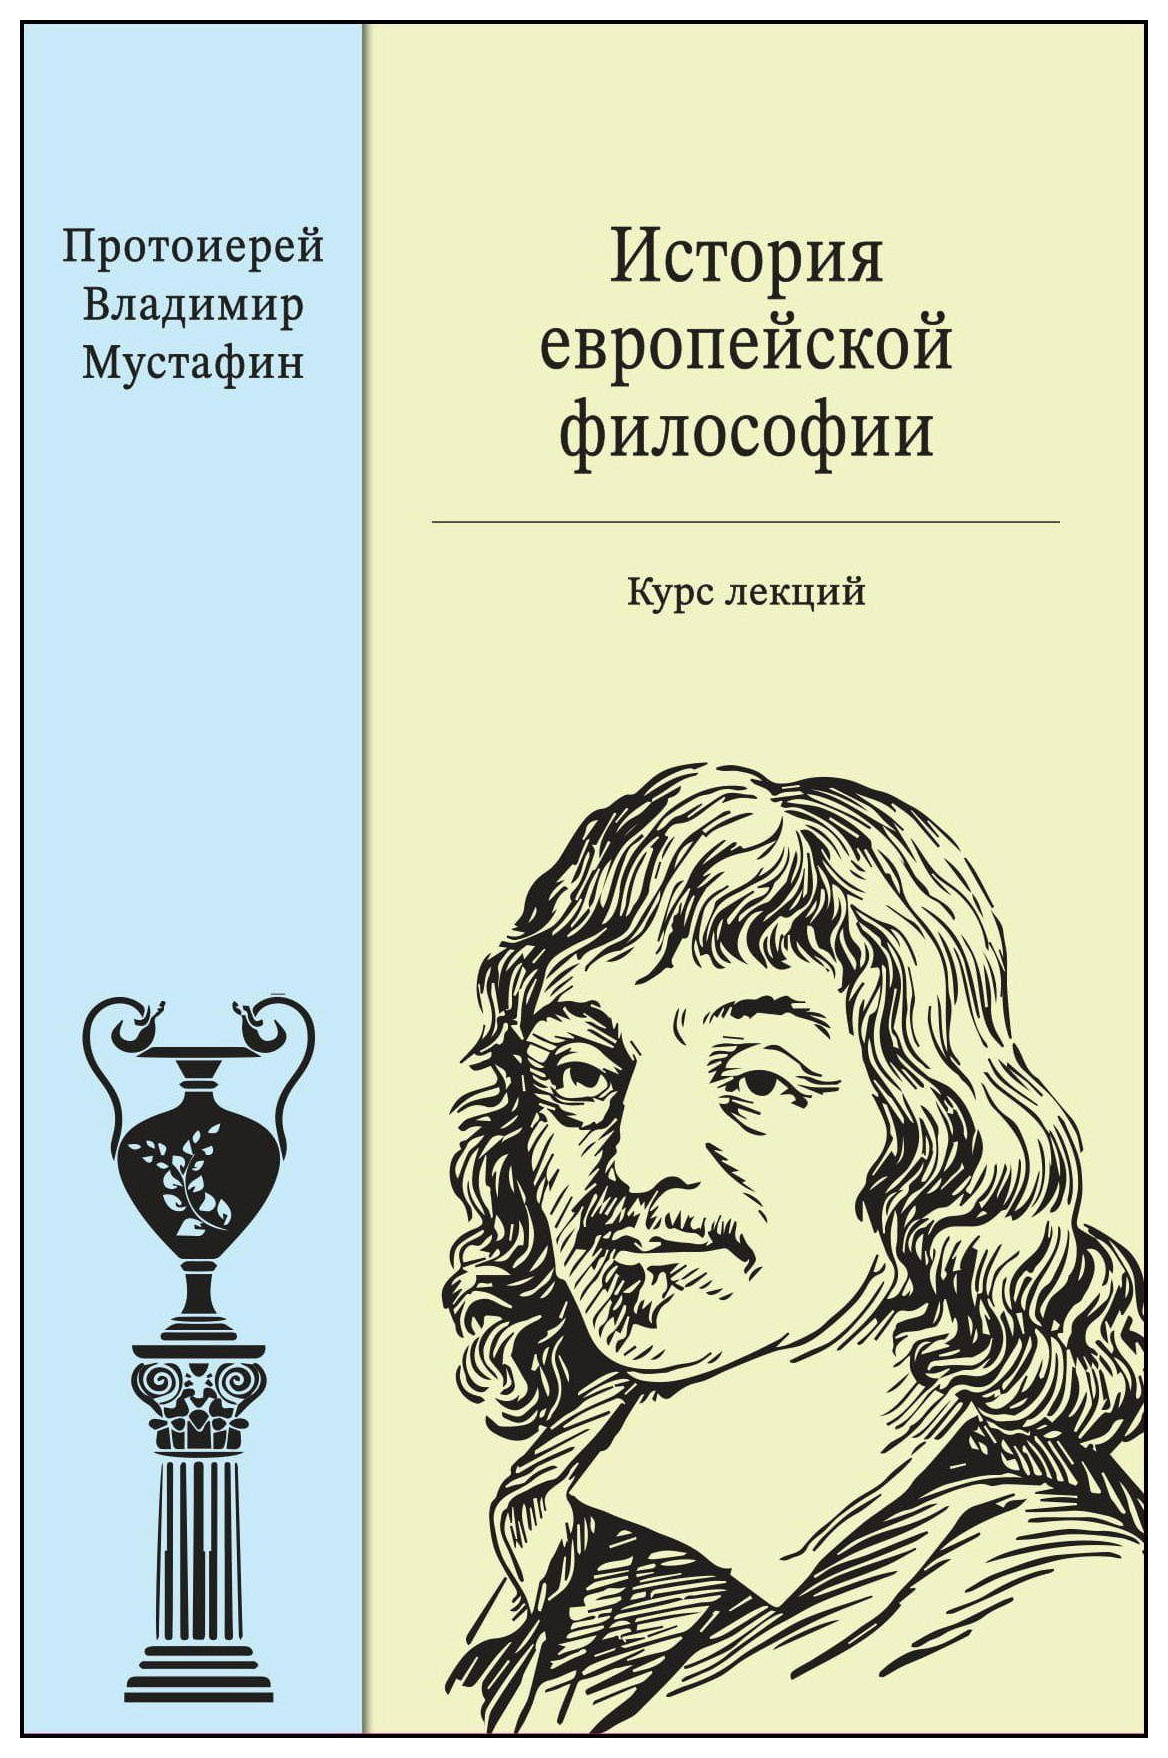 История европейской философии история античной македонии